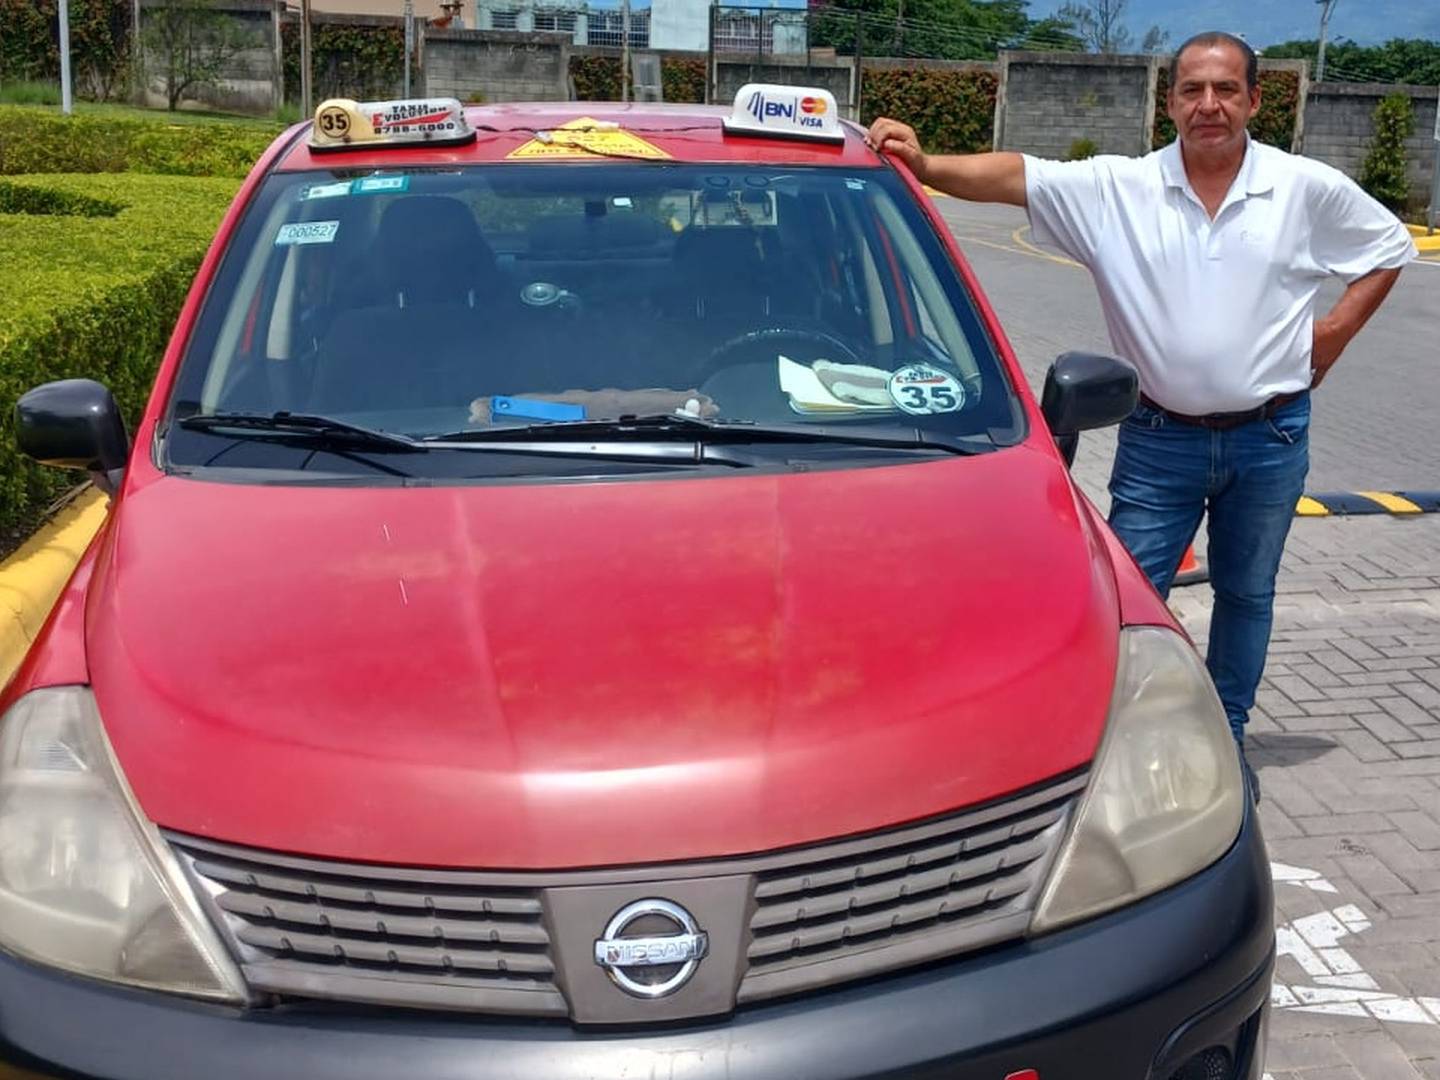 30 años de ser taxista Edwin Madriz Fonseca es un taxista de 59 años, vecino de Calle Blancos. La CCSS se niega a condonar una deuda por atención médica.